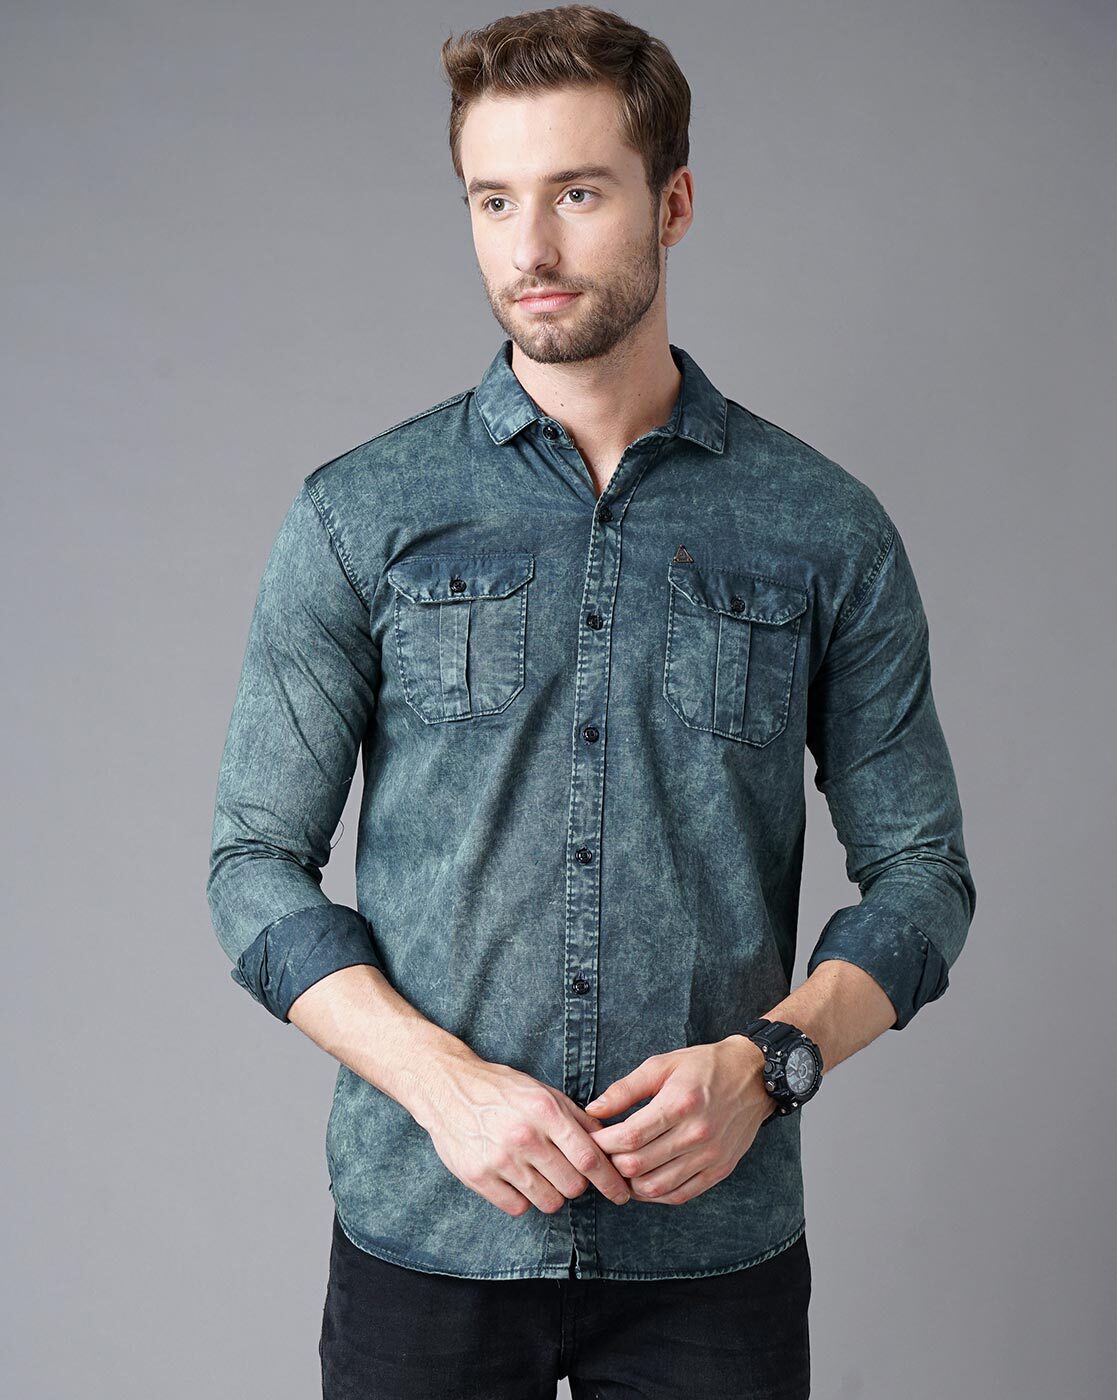 Buy Teal Blue Shirts for Men by K LARA Online